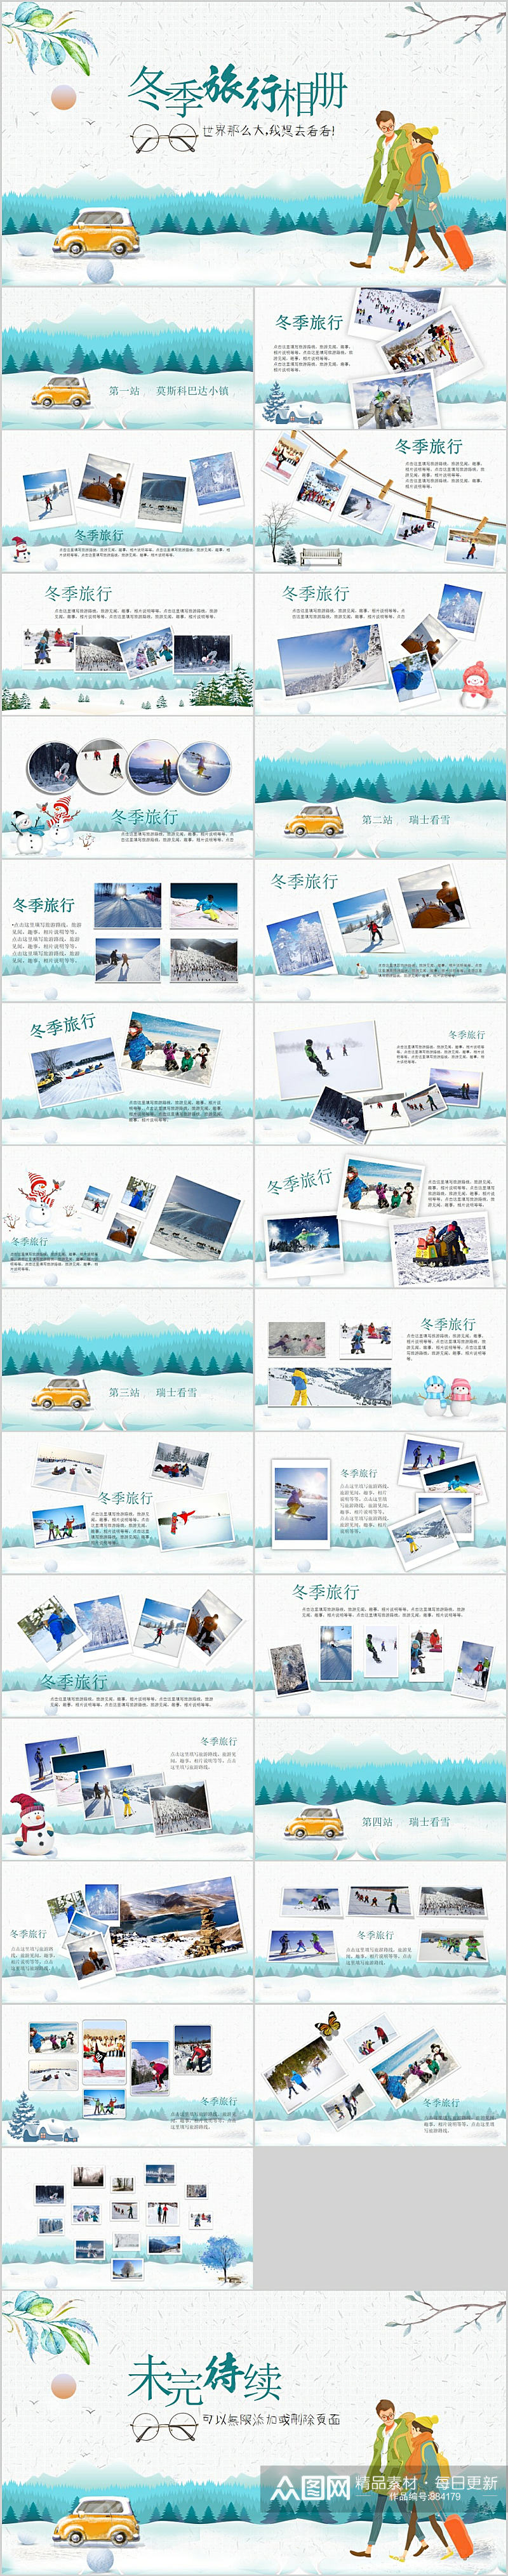 冬季旅行相册PPT模板素材